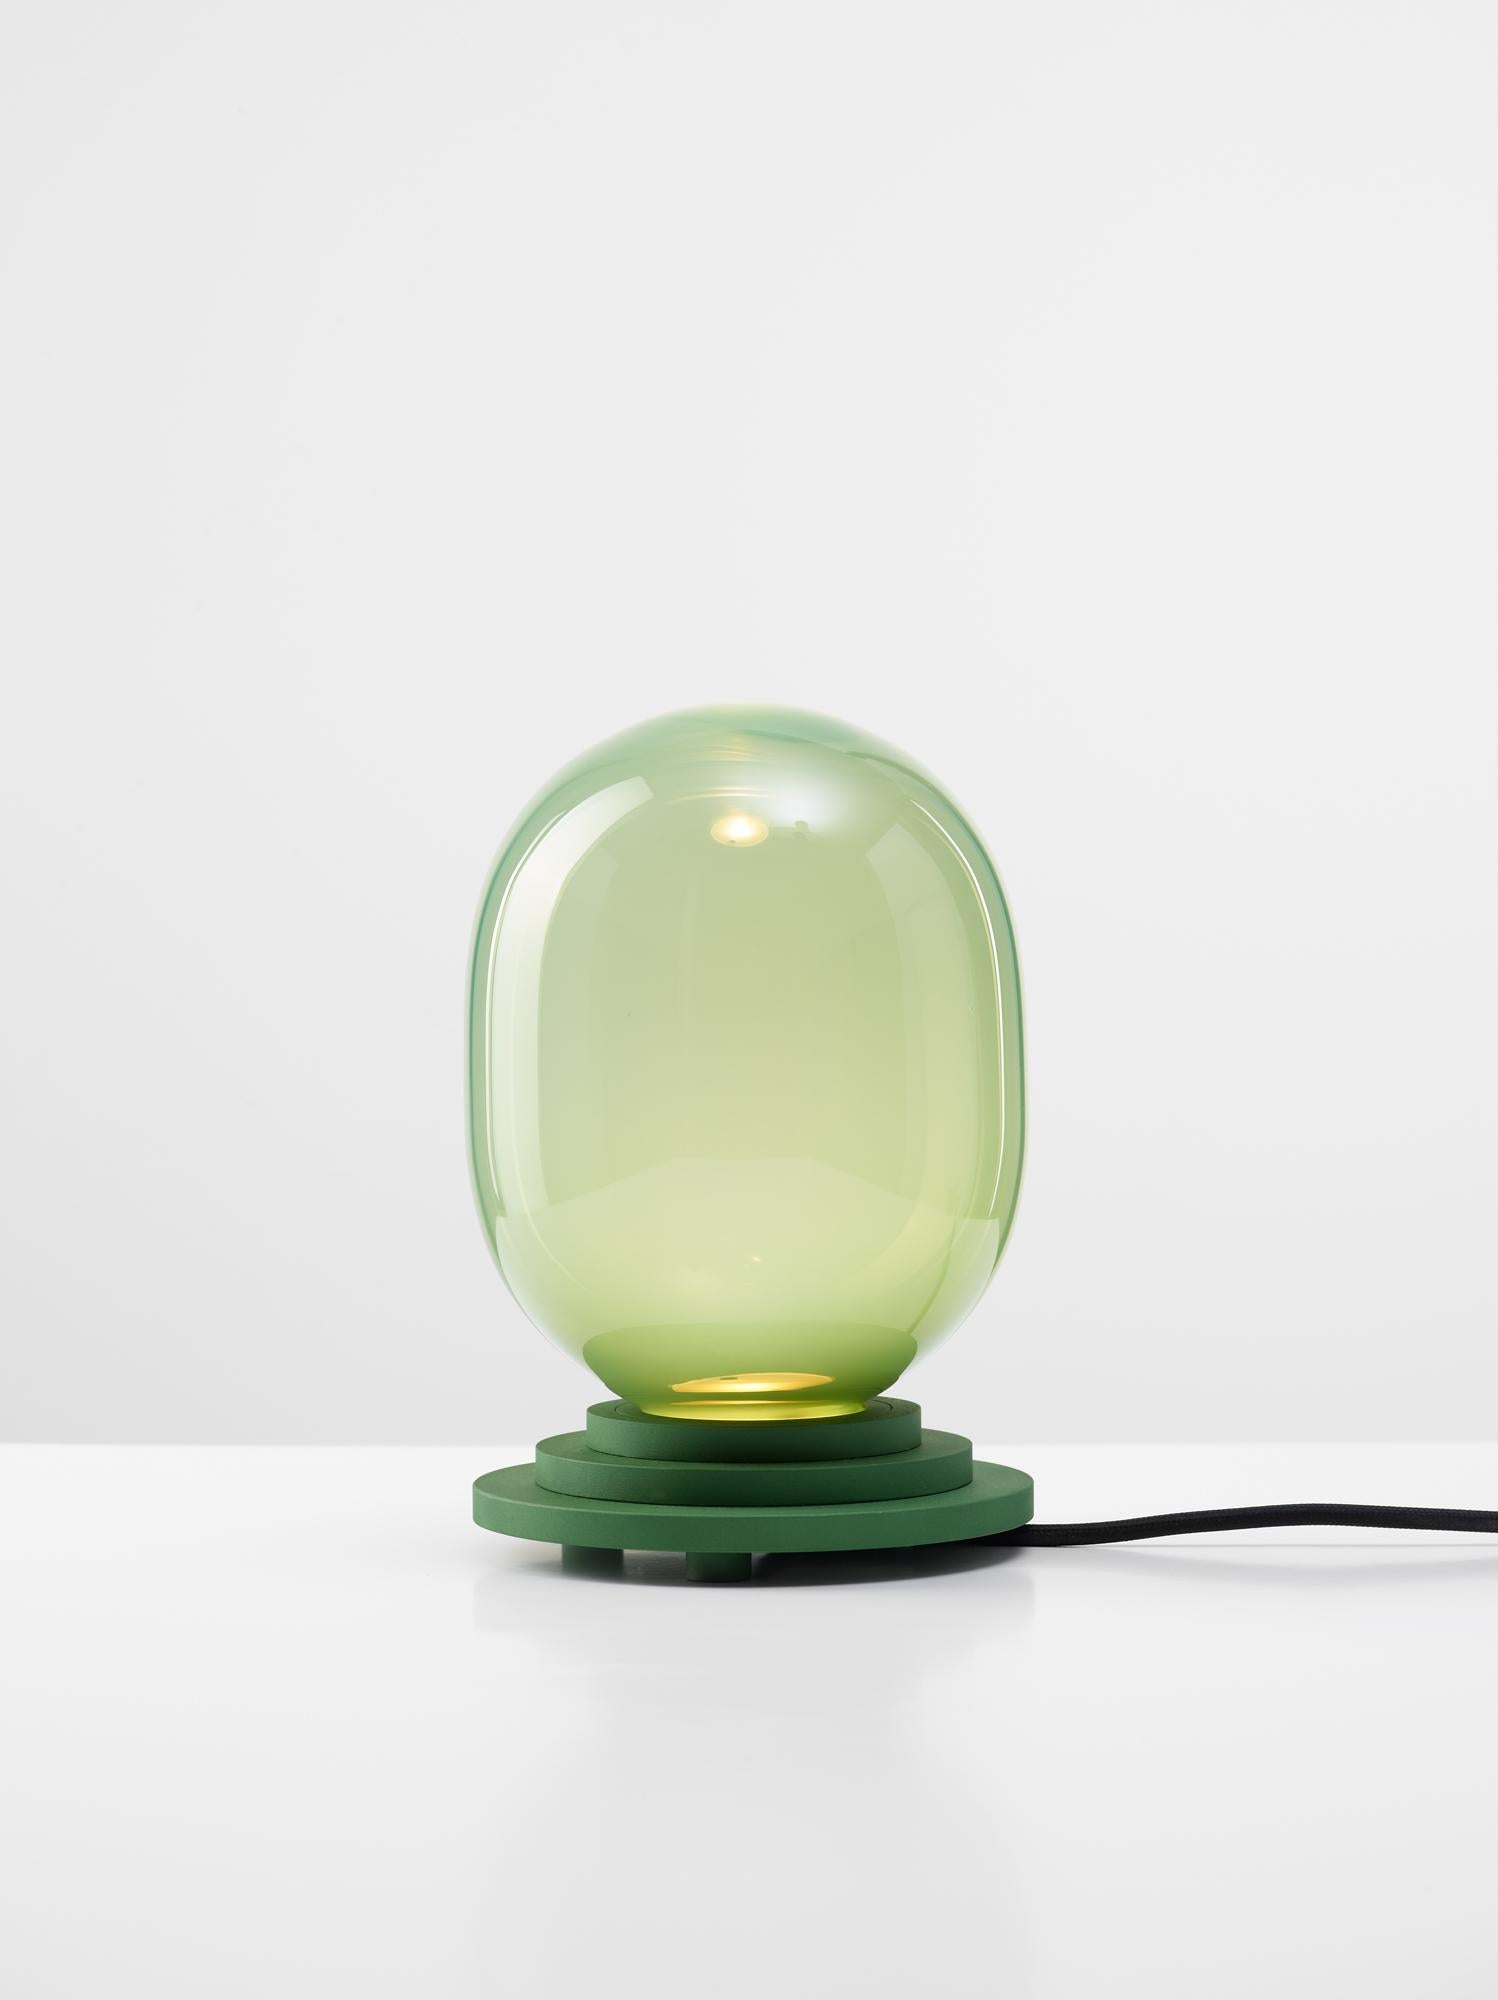 Lampe de table à capsule stratos verte par Dechem Studio
Dimensions : D 15 x H 22 cm
MATERIAL : Aluminium, verre.
Également disponible : Différentes couleurs disponibles.

Les différentes formes de capsules et de sphères contrastent avec les